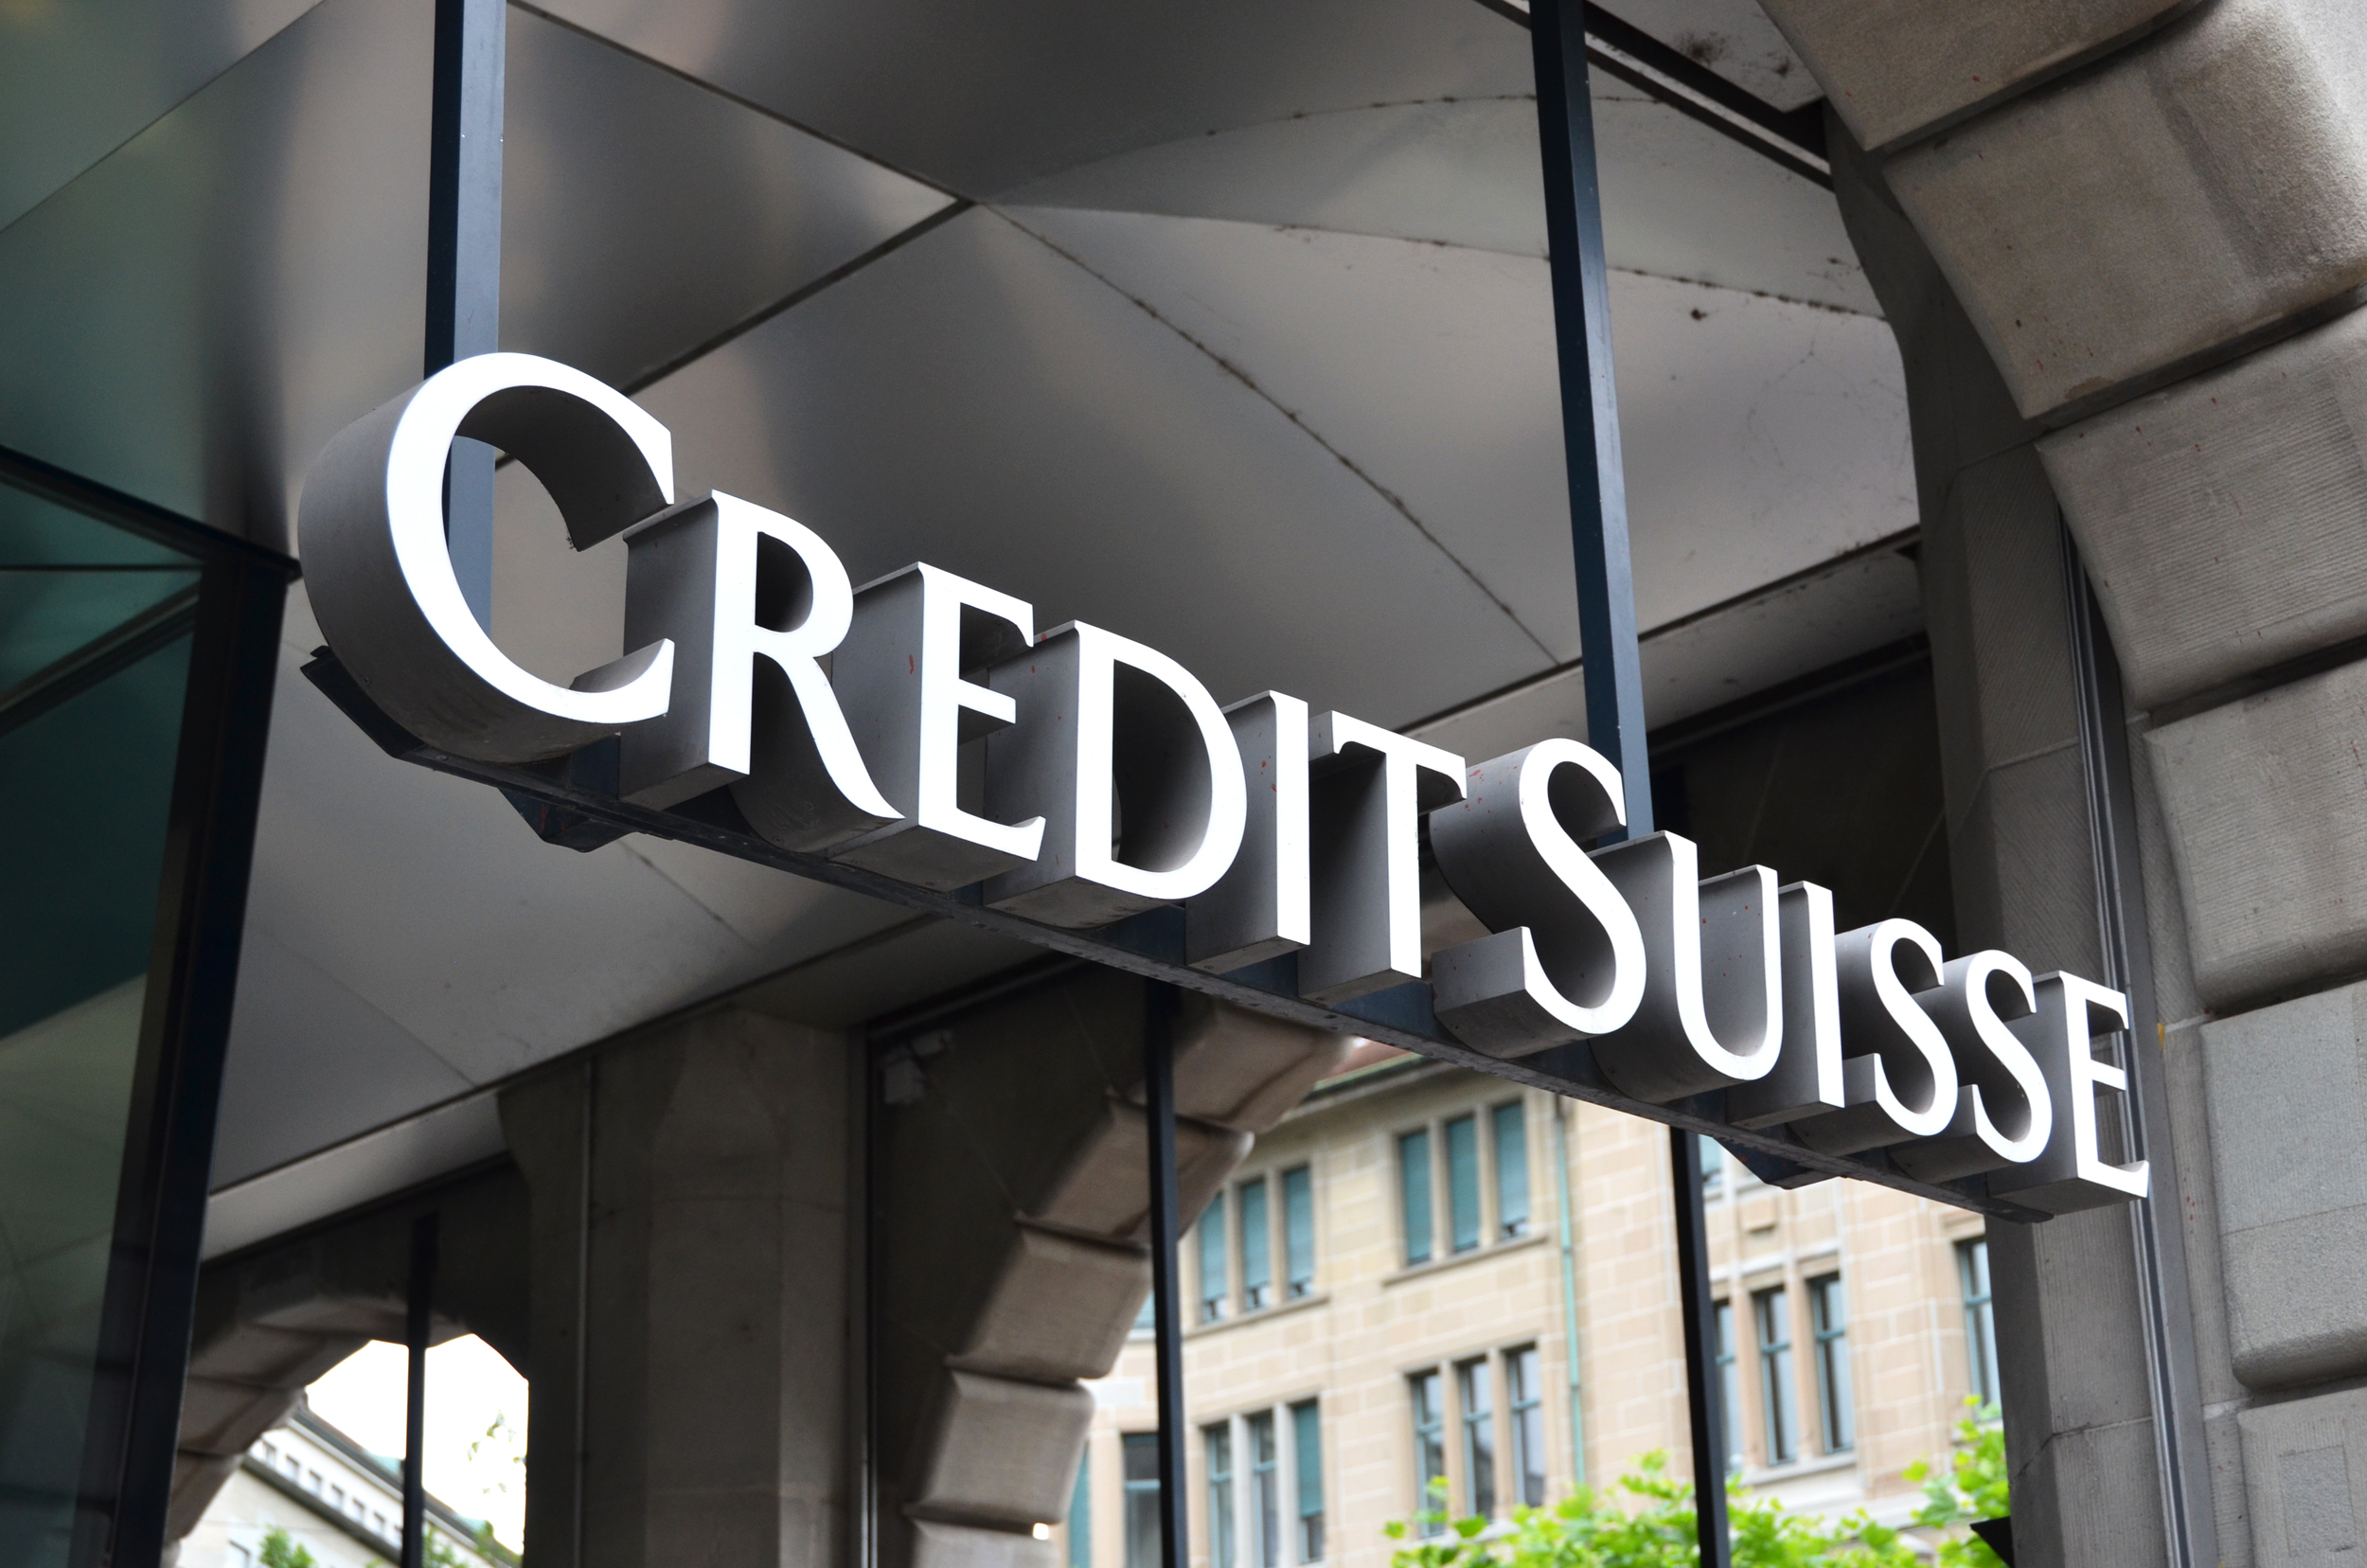 Com CEO fura-quarentena e perdas de clientes, Credit Suisse tem desafio de recuperar reputação